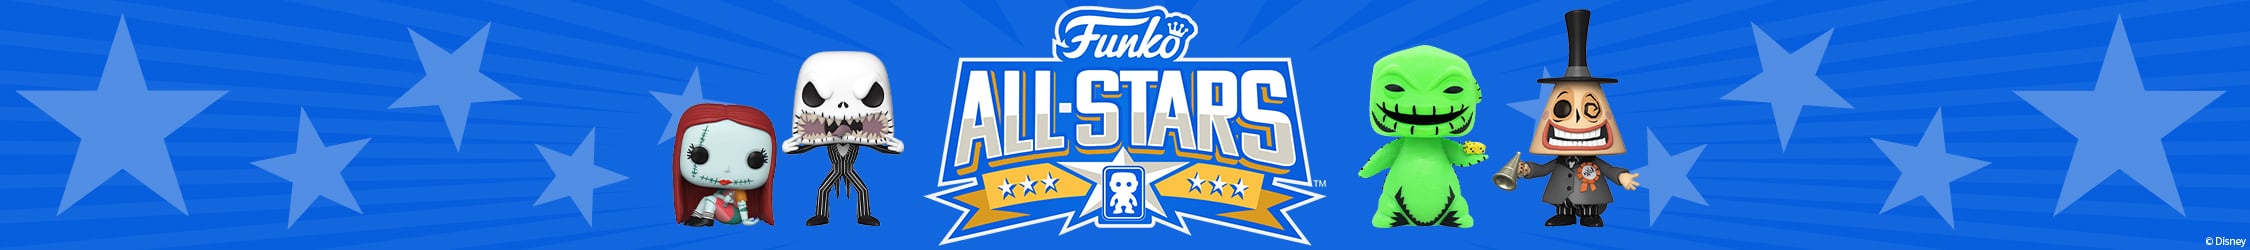 Funko All Stars NBX